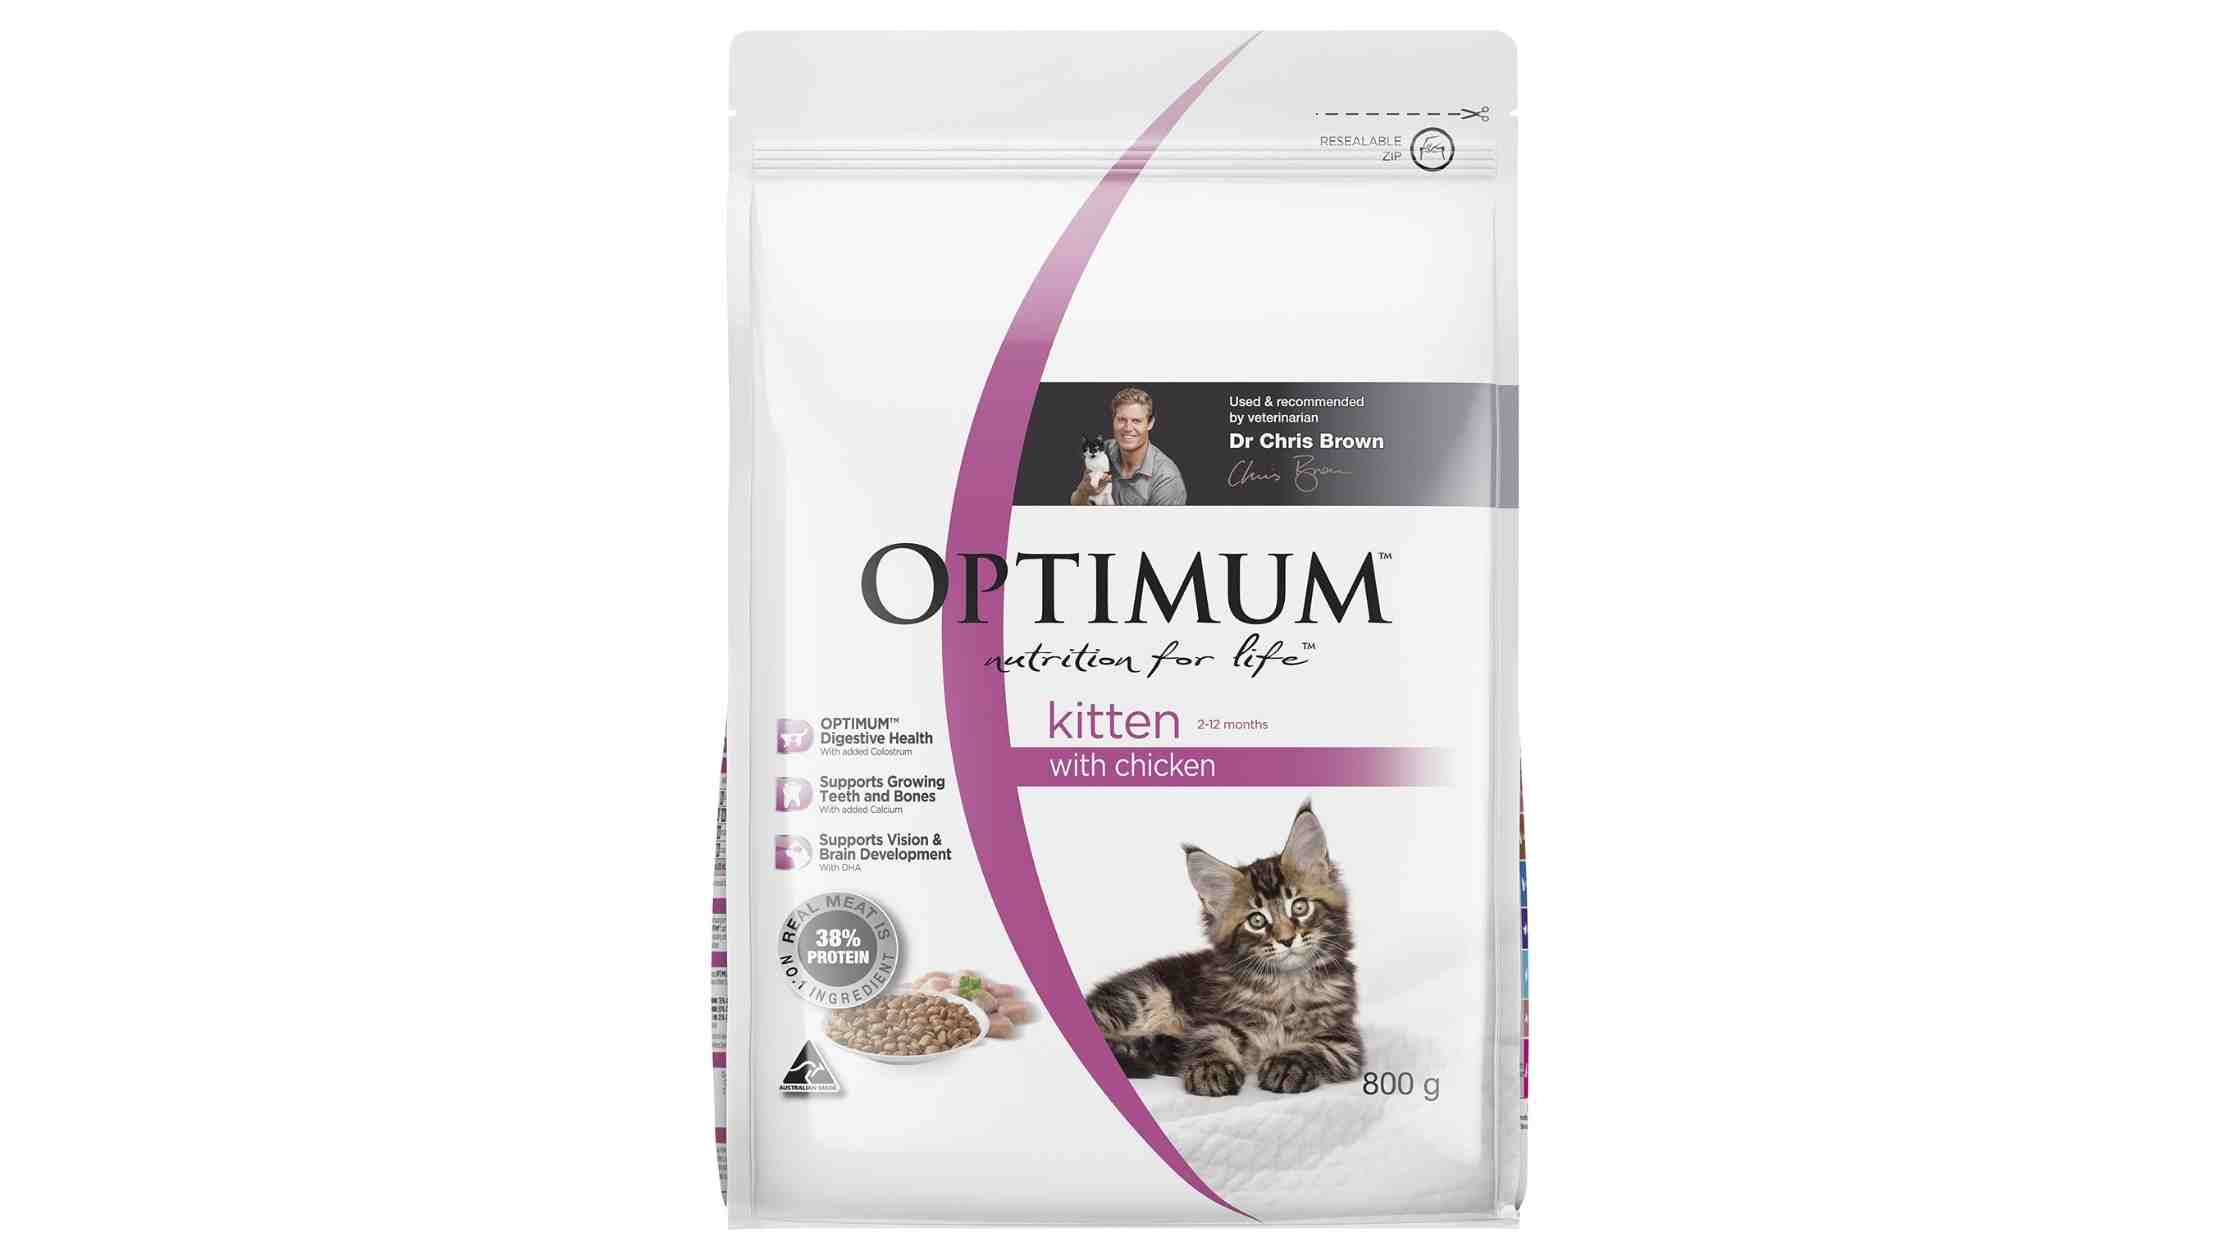 Optimum cat food review